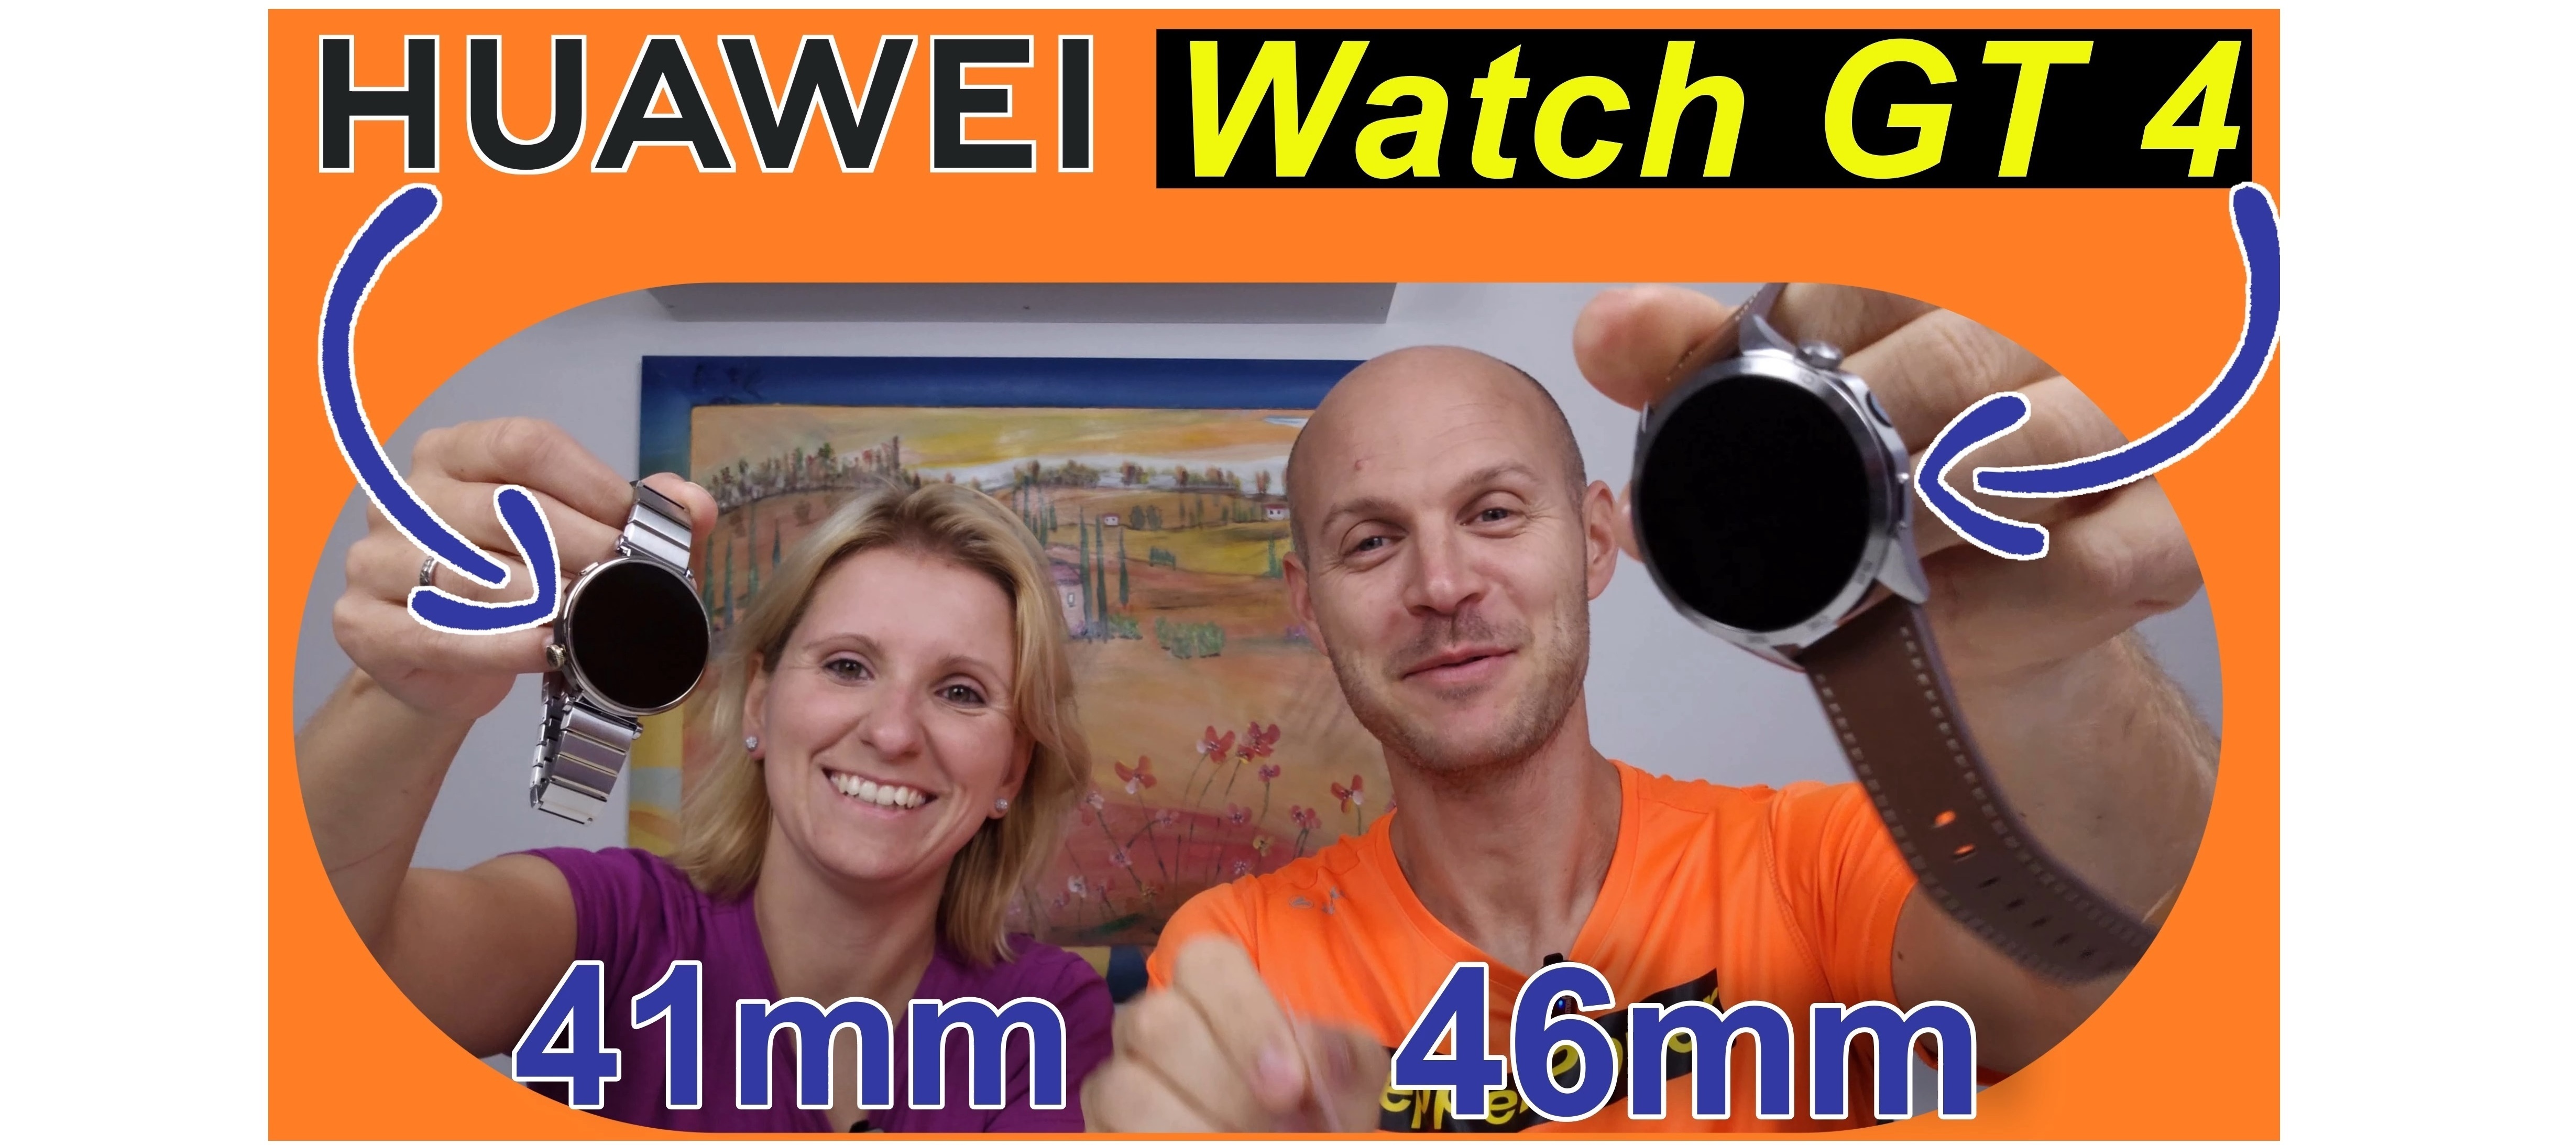 Huawei Watch GT 4 - zwei Mal Unboxing zu zweit | SeppelPower